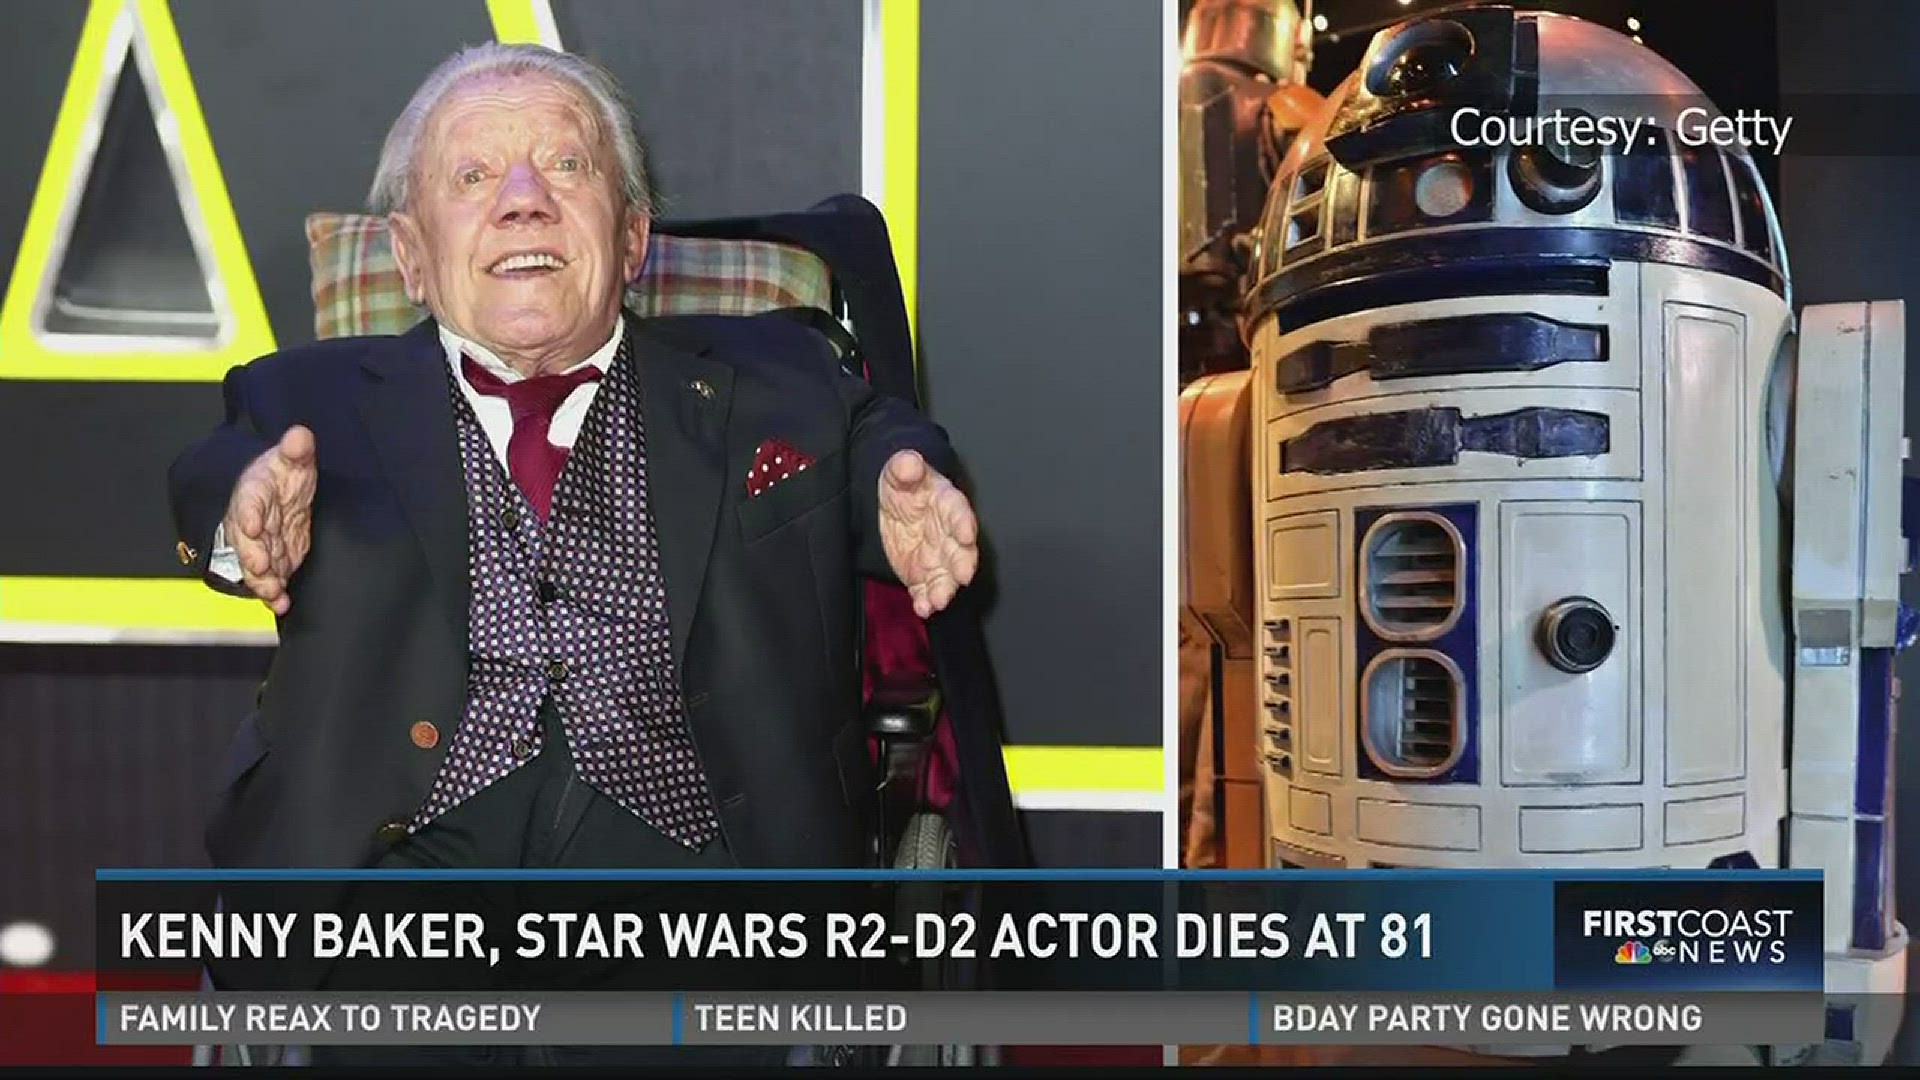 Kenny Baker, Star Wars R2-D2 actor dies 81